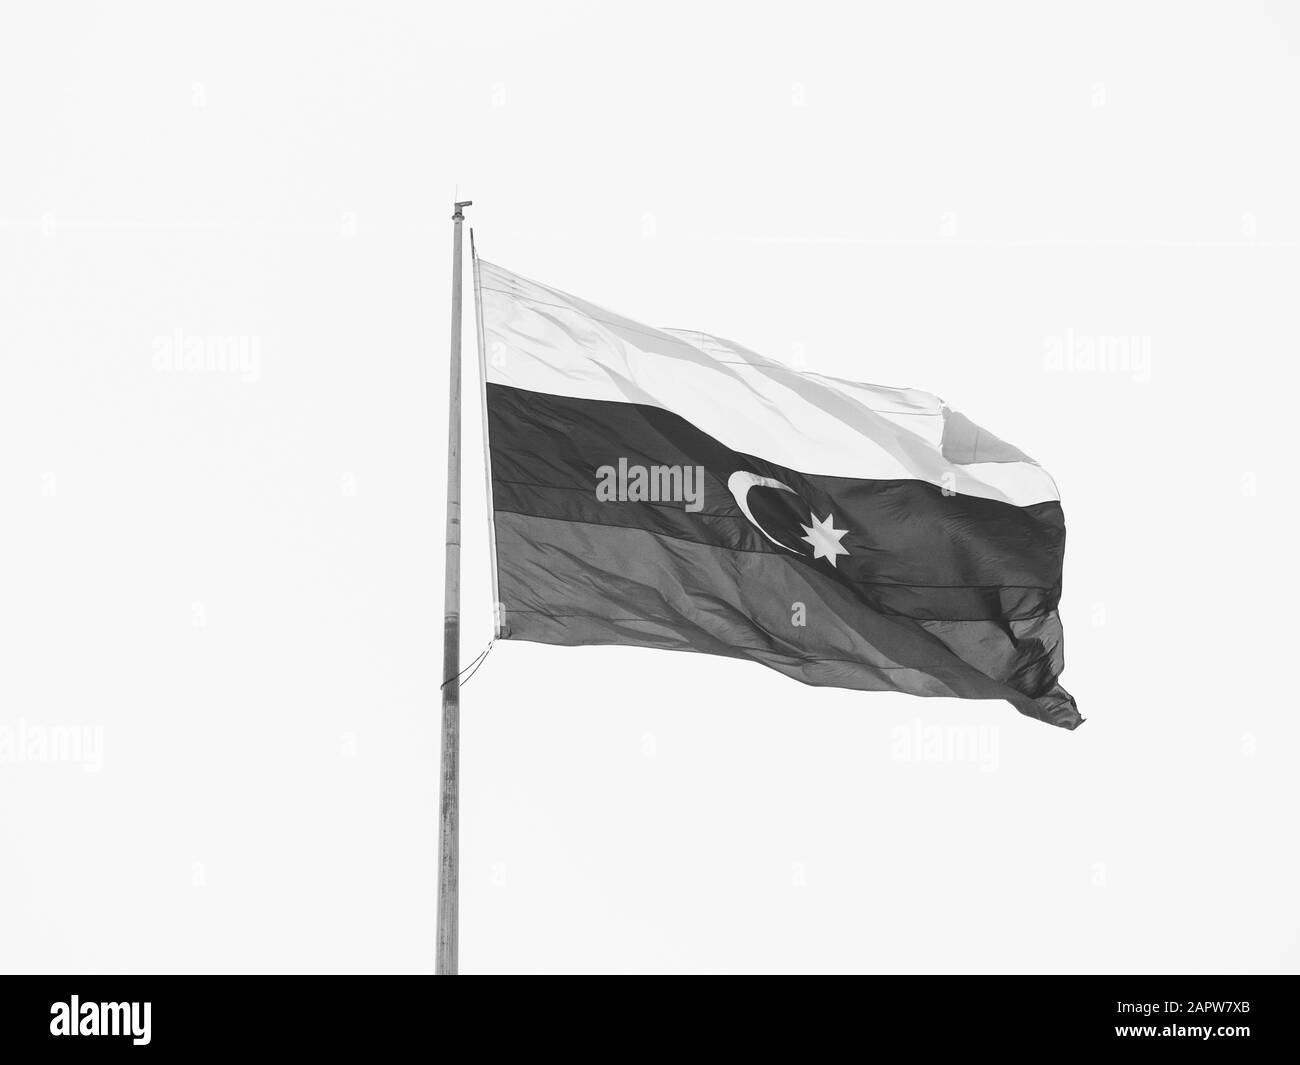 Azerbaijan flag Black and White Stock Photos & Images - Alamy